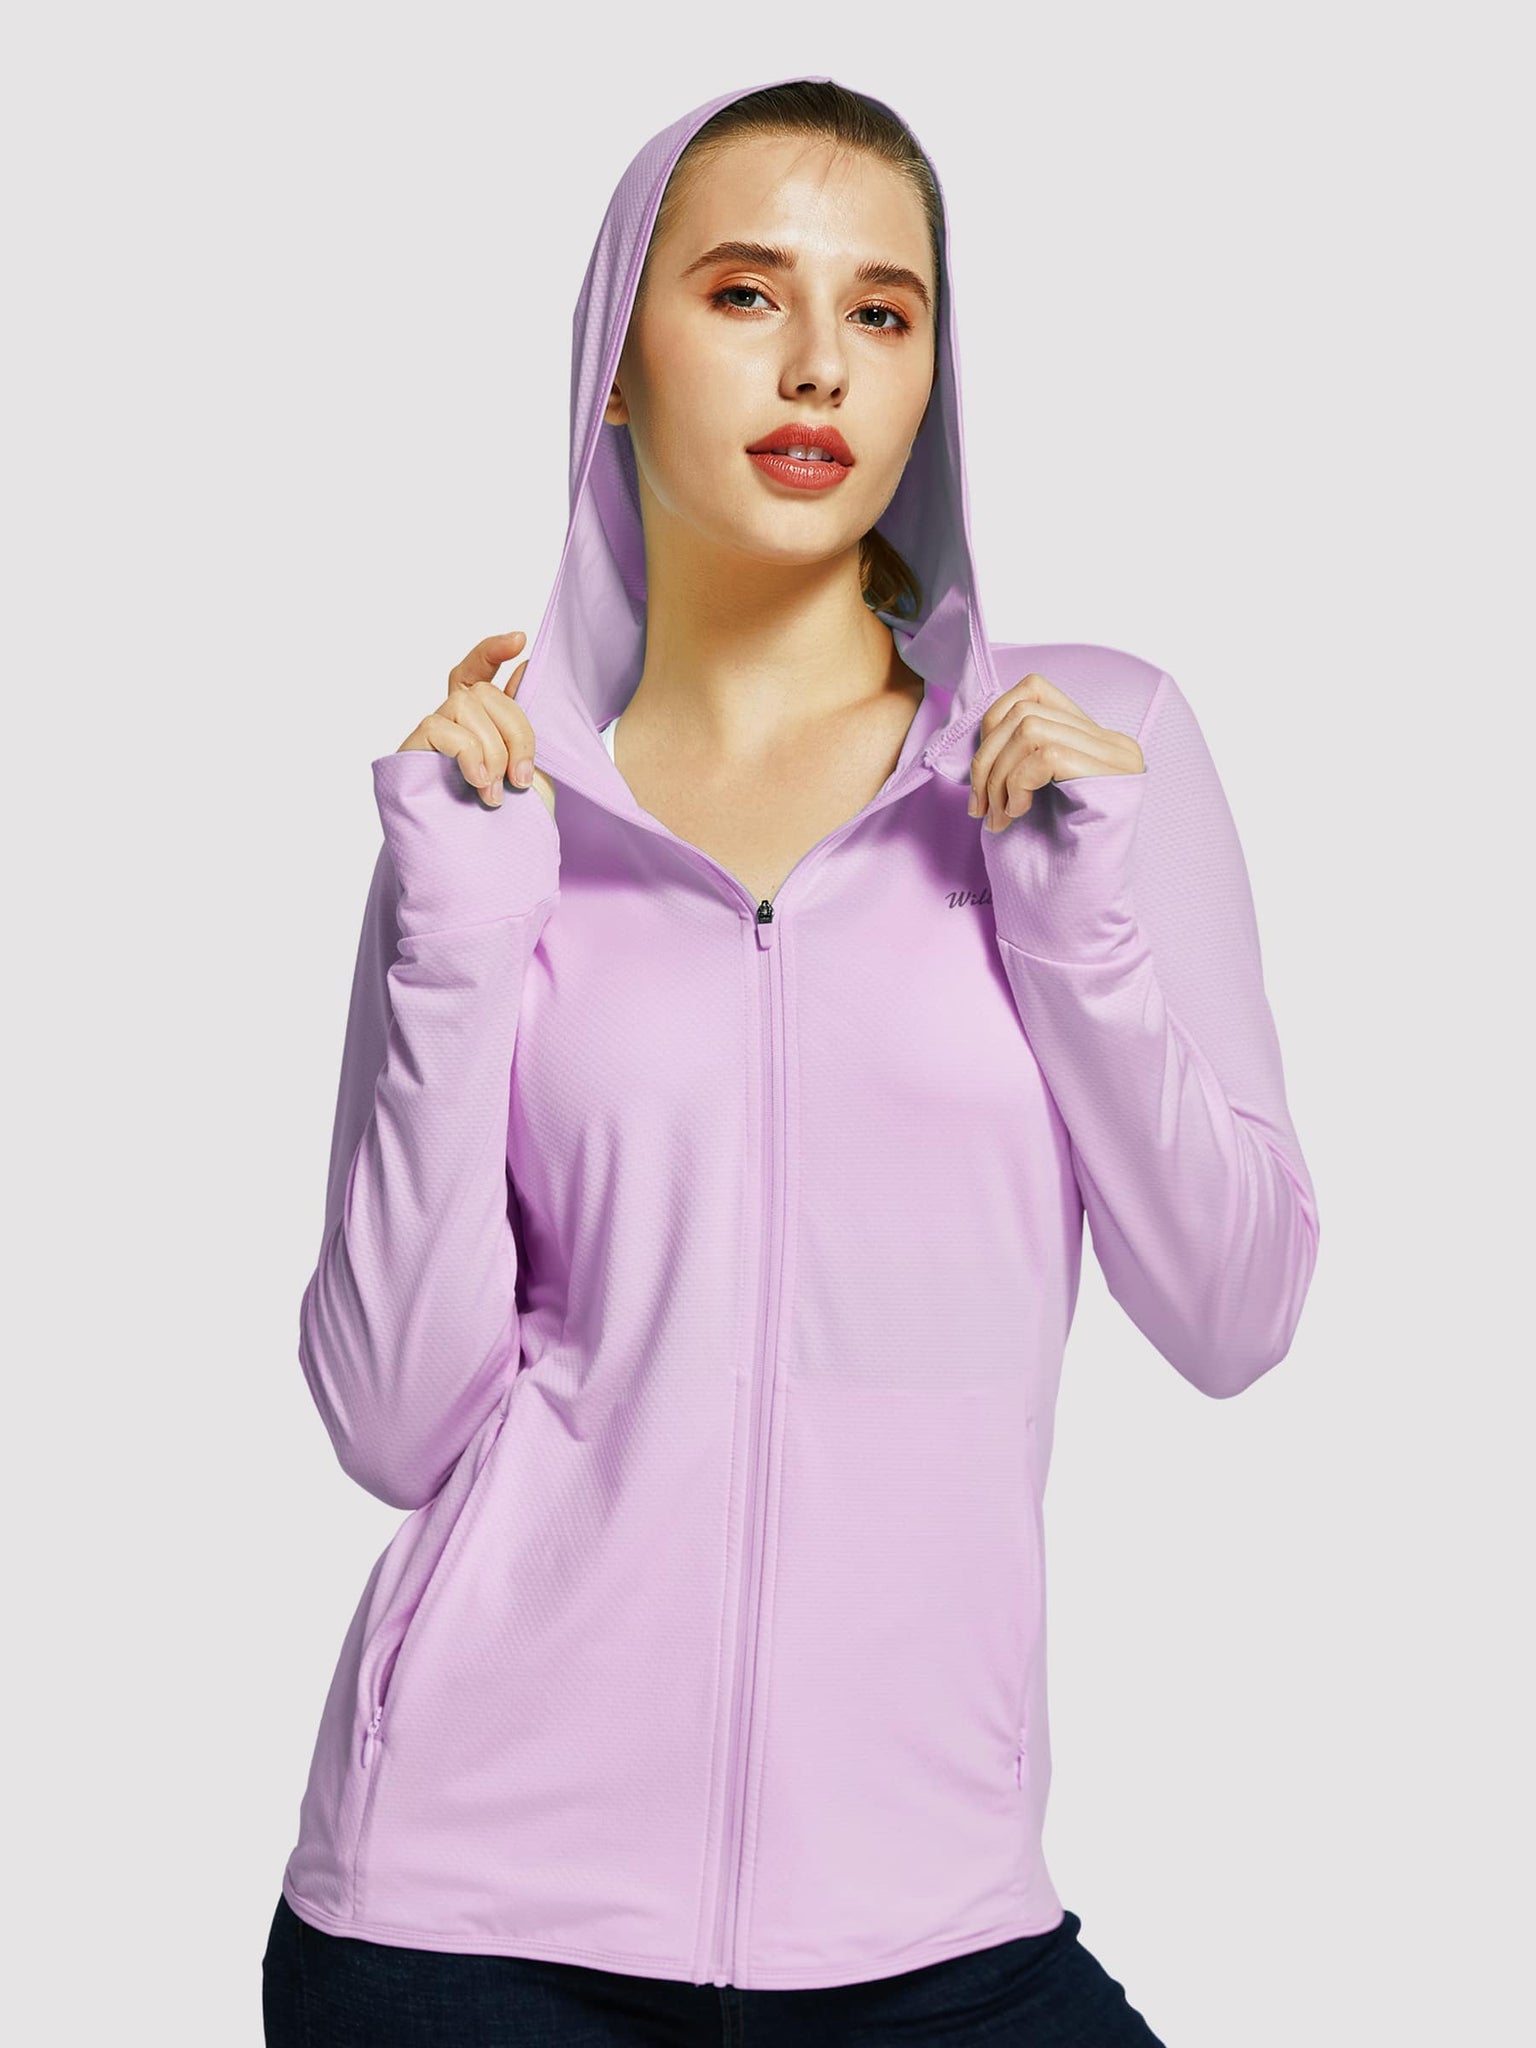 Willit Women's Outdoor Sun Protection Jacket Full Zip_Purple_model2